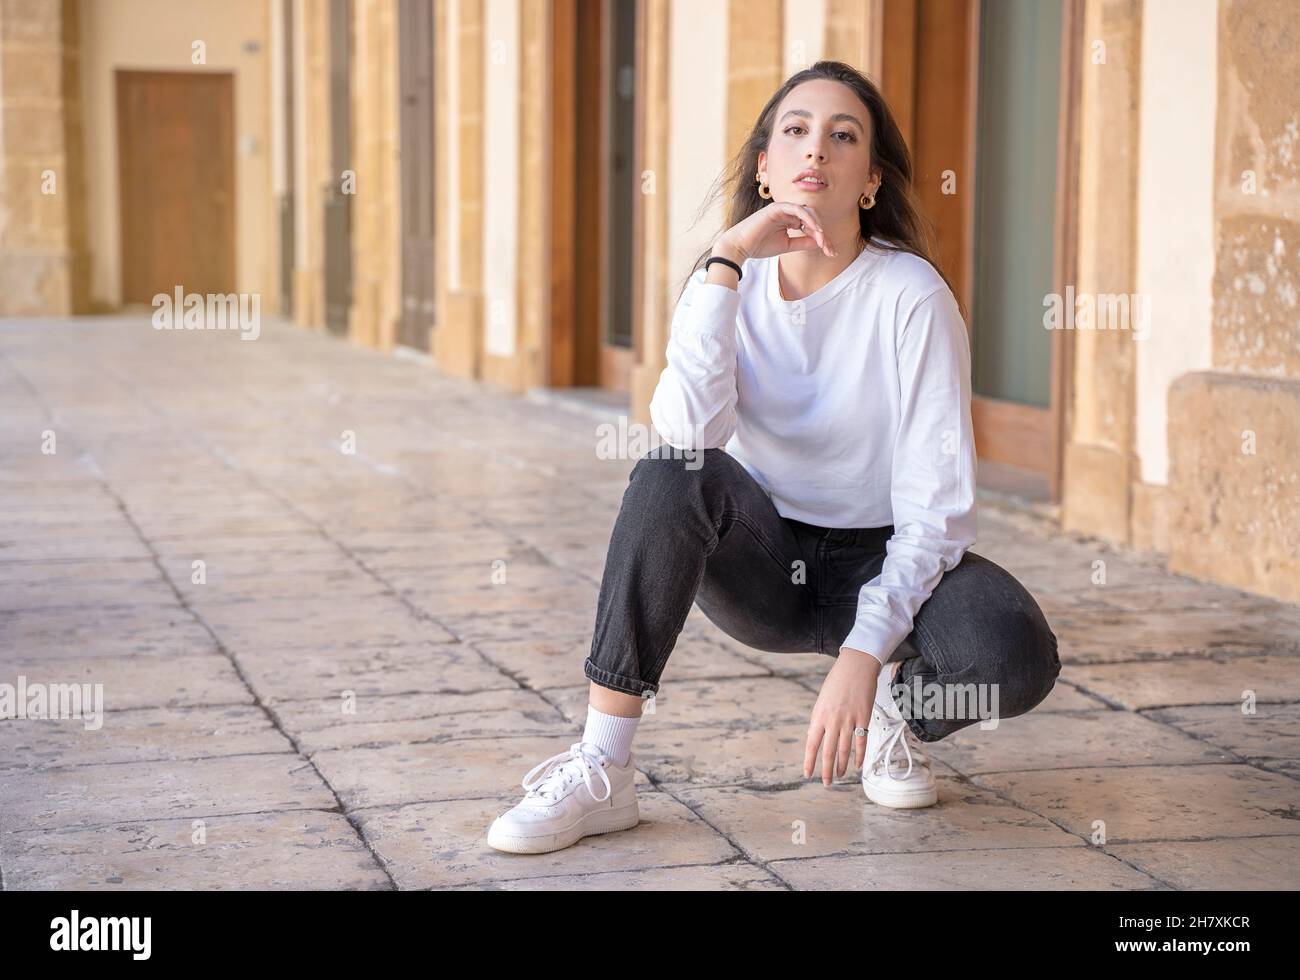 Porträt des jungen schönen kaukasischen braune Haare Frau posiert im Freien in der Stadt, Blick in die Kamera, nachdenklich - ernst, melancholisch, heiter Konzept Stockfoto